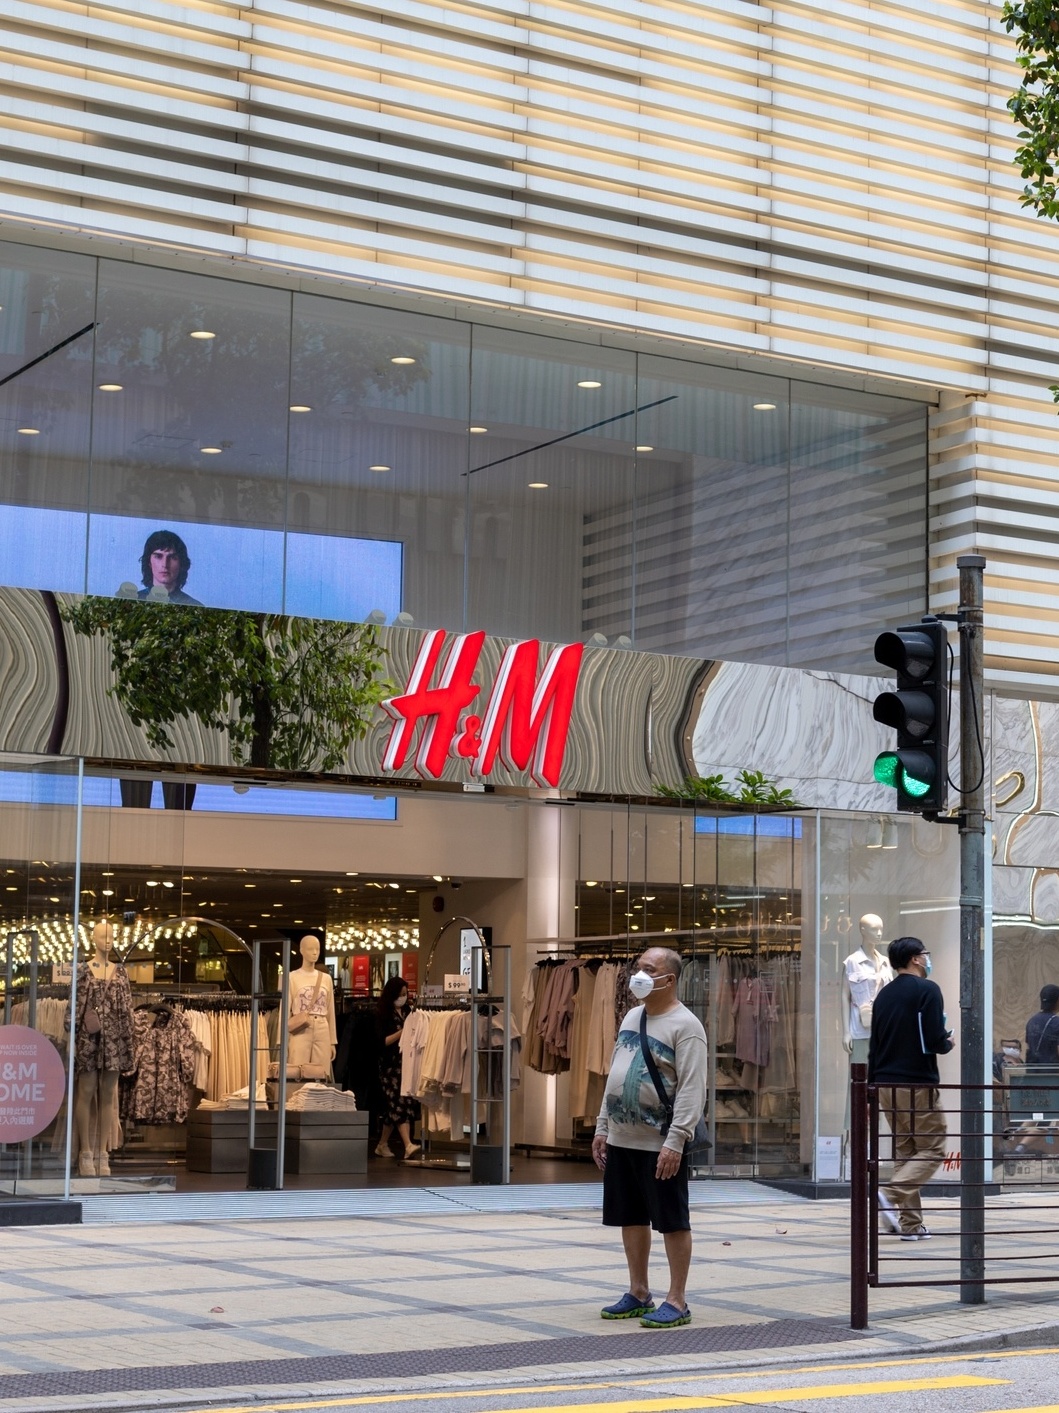 H&M, concorrente da Zara, anuncia chegada ao Brasil em 2025